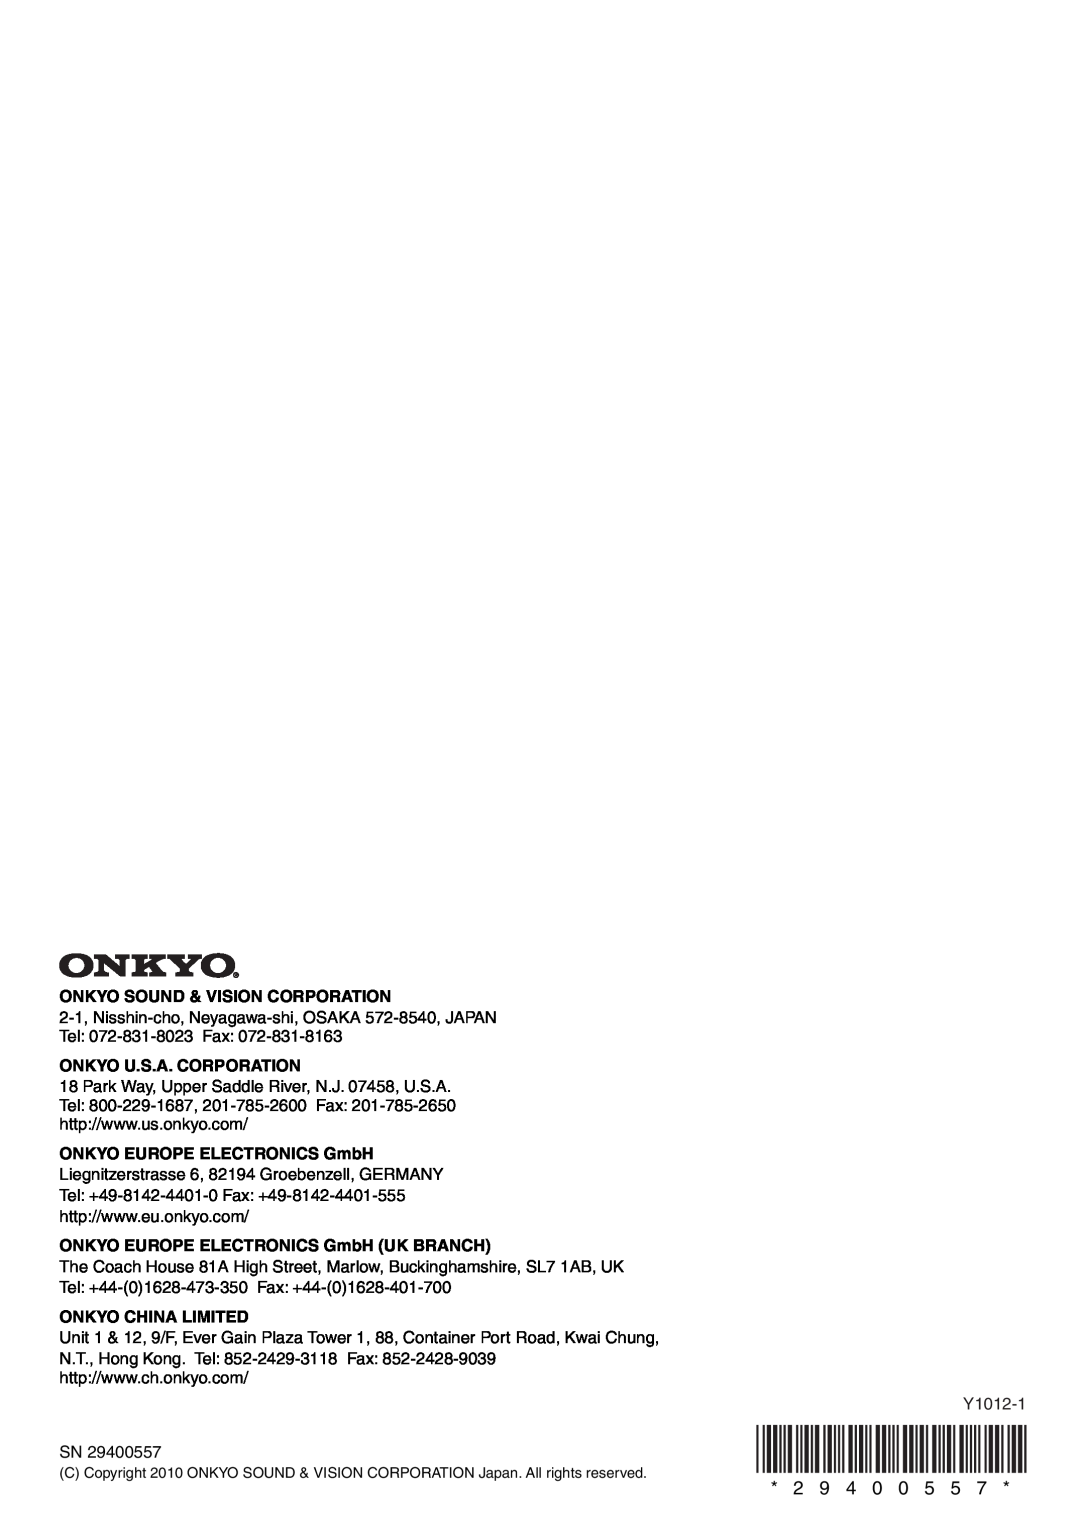 Onkyo TX-SR309 instruction manual Onkyo Sound & Vision Corporation, Onkyo U.S.A. Corporation, ONKYO EUROPE ELECTRONICS GmbH 